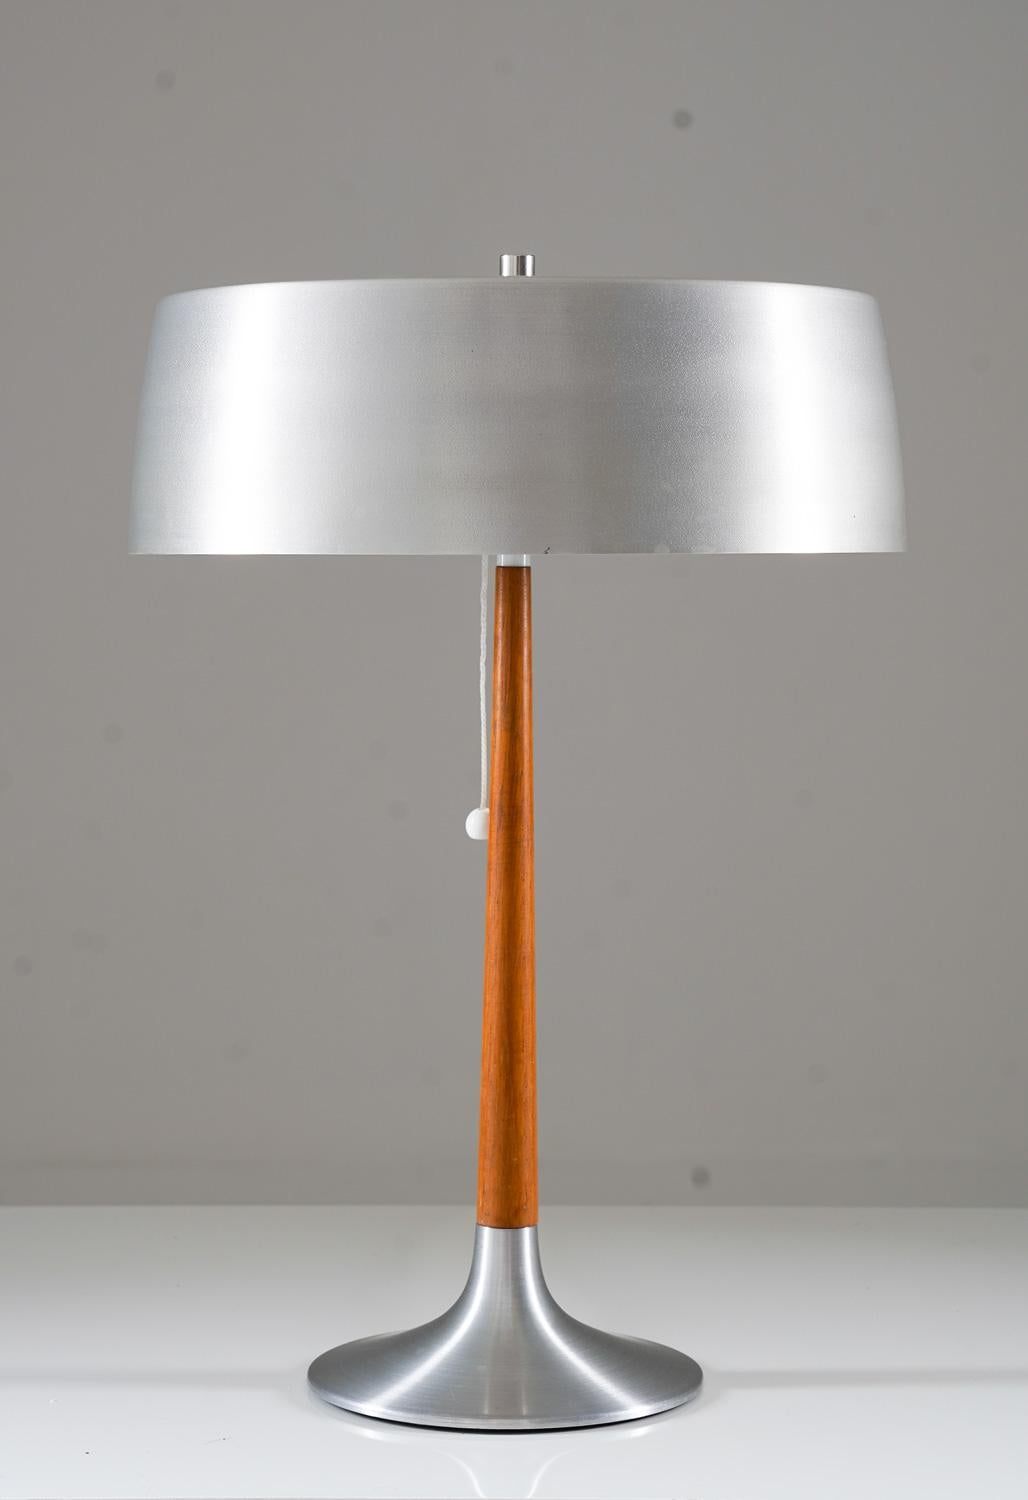 Cette lampe de table d'ASEA est un charmant objet d'éclairage des années 1960, originaire de Suède. Cette lampe au design épuré et élégant est fabriquée en aluminium brossé et en teck. 

En ce qui concerne son état, la lampe est en très bon état,